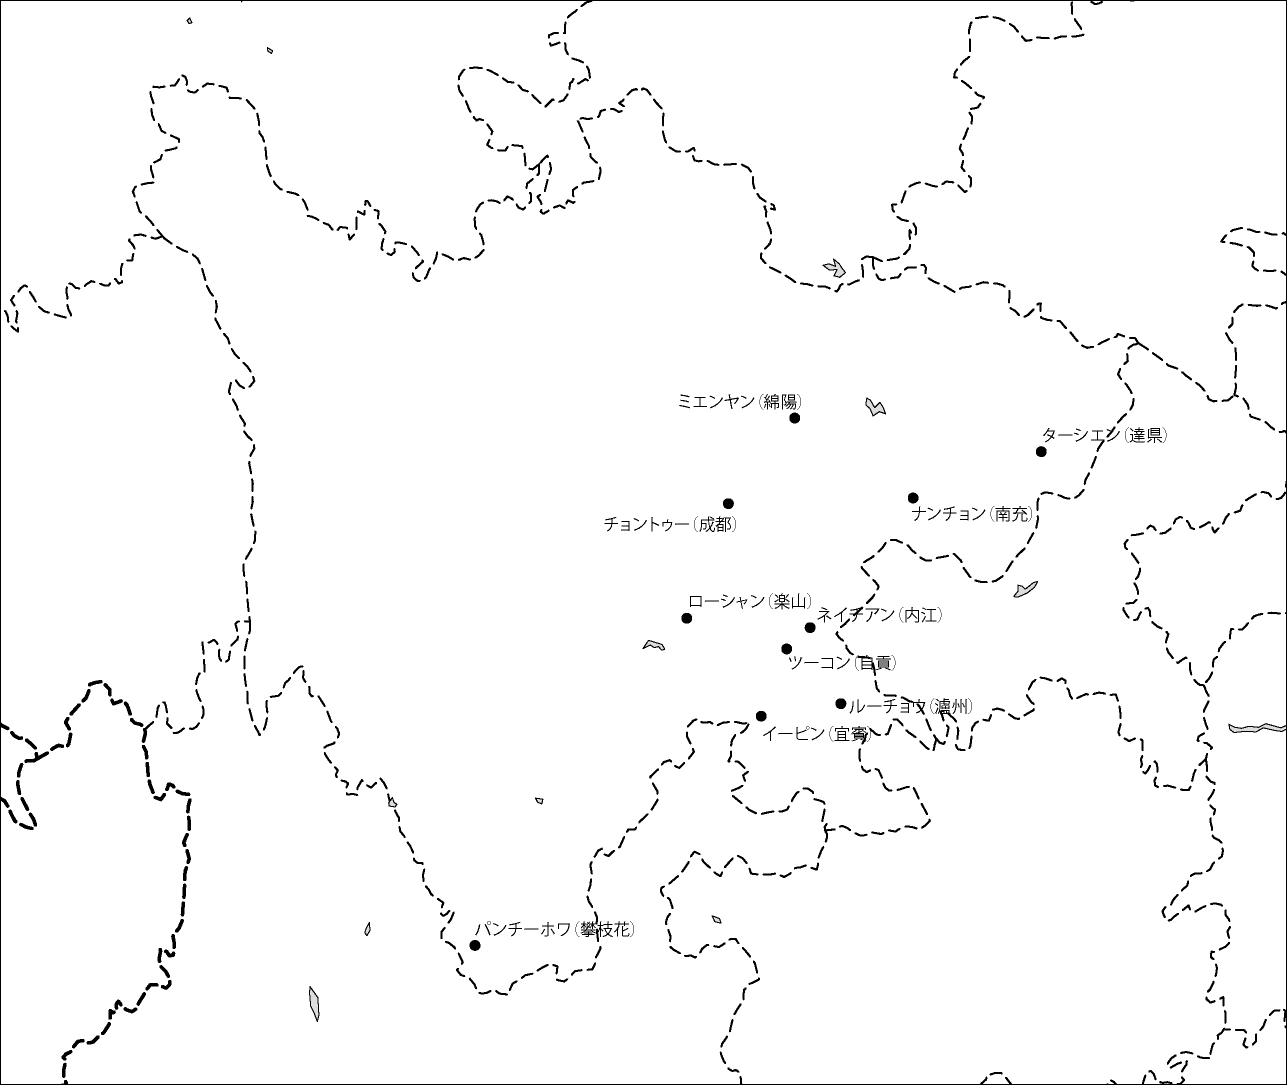 四川省白地図(主な都市あり)のフリーデータの画像